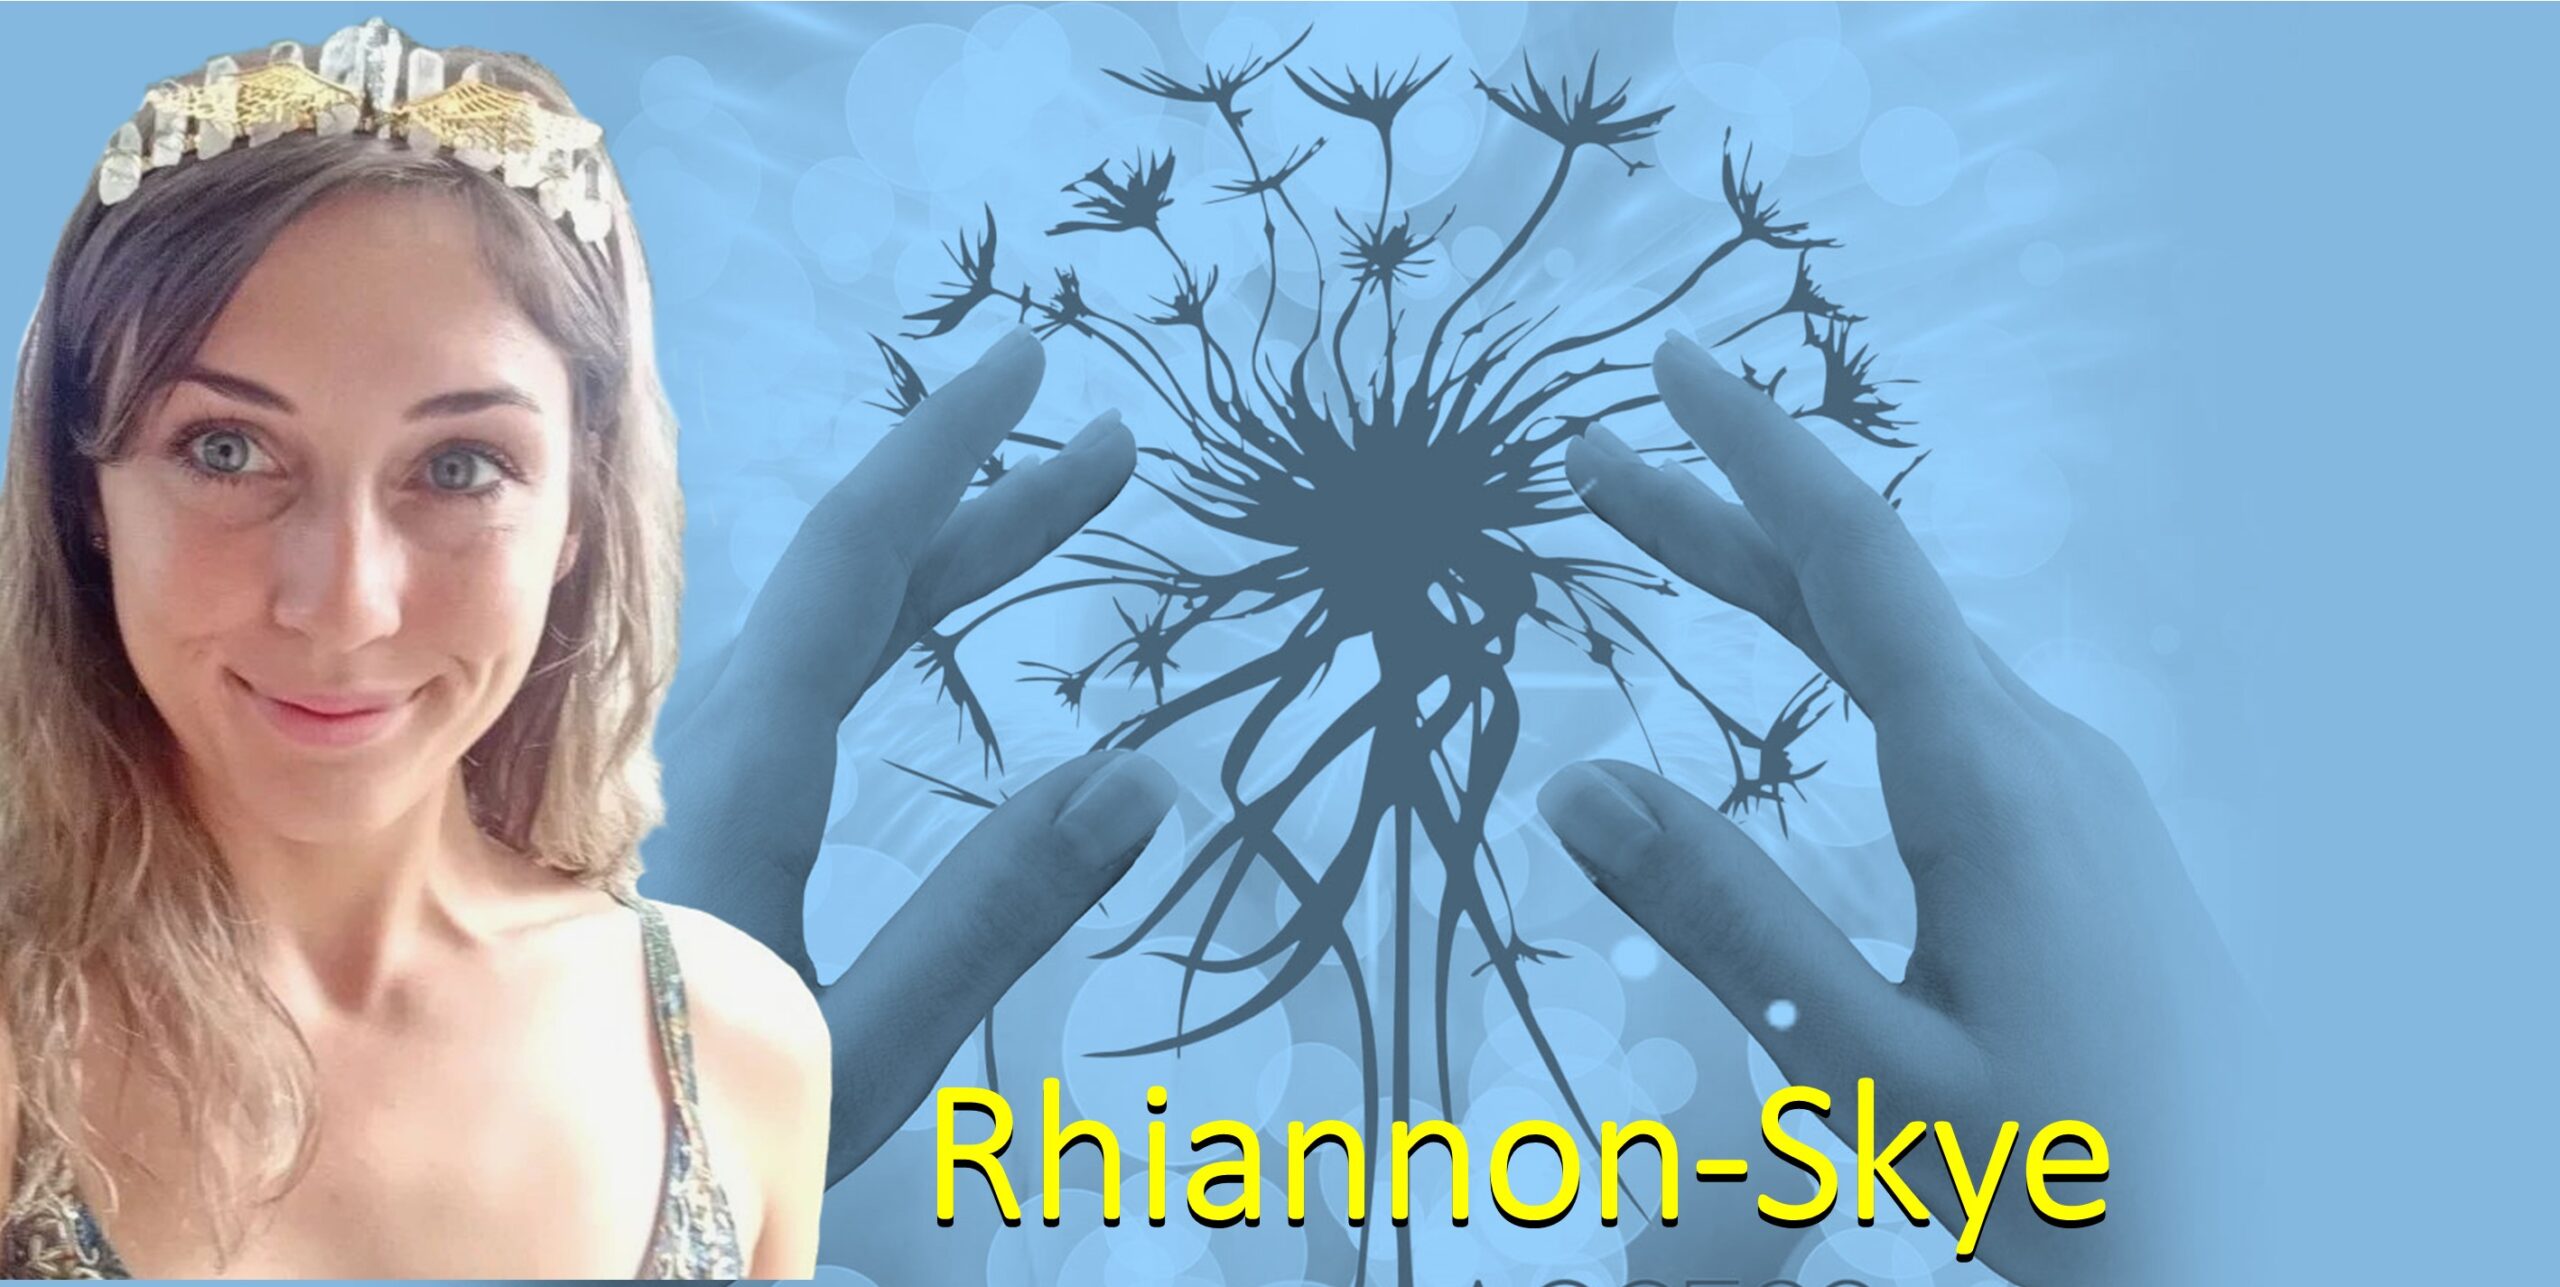 Rhiannon-Skye